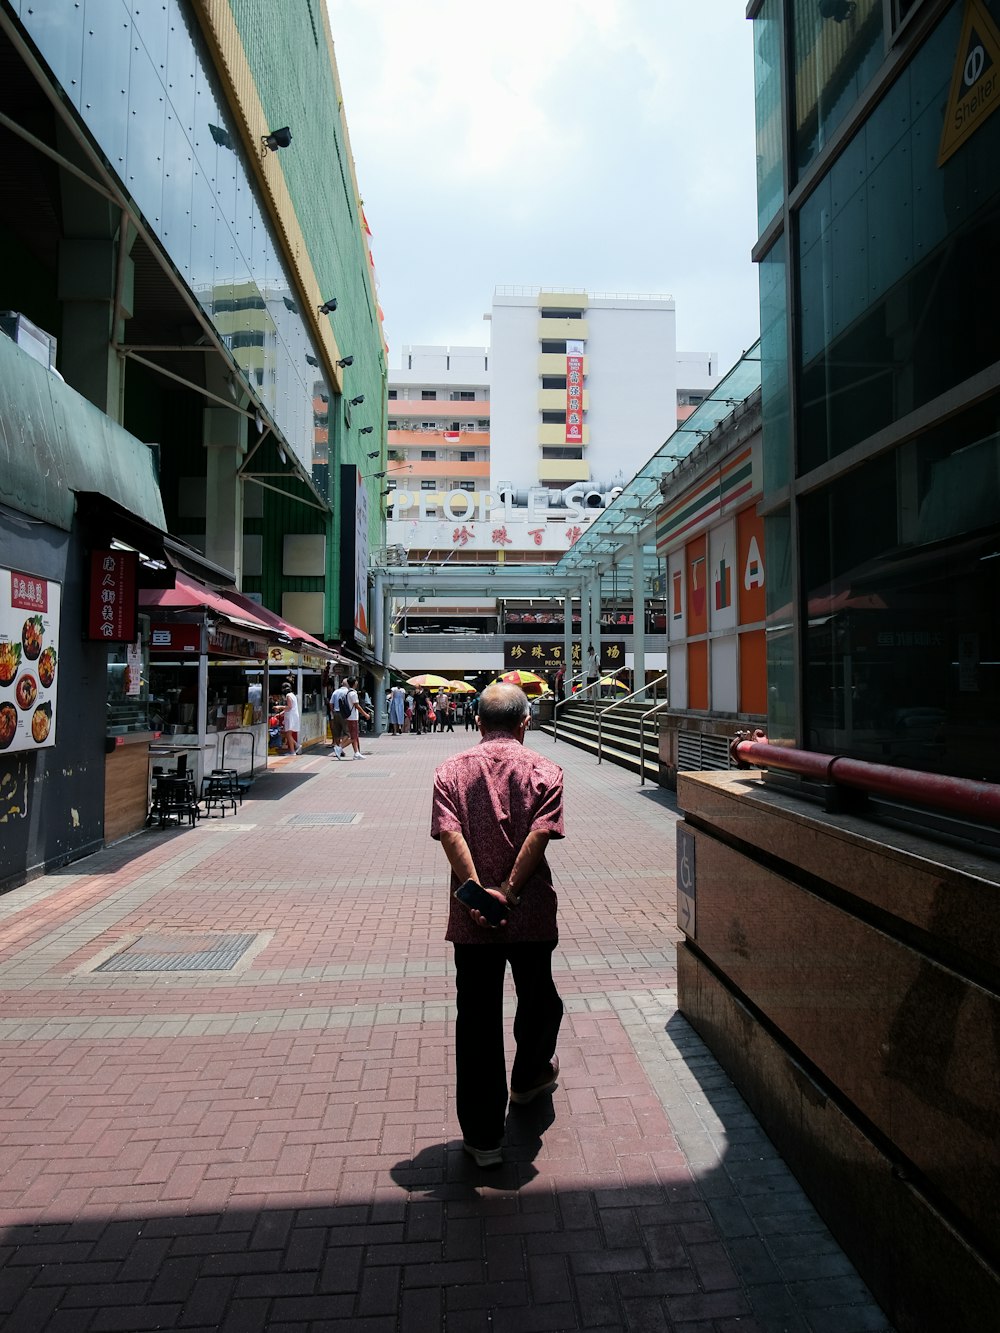 a man walking down a sidewalk in a city